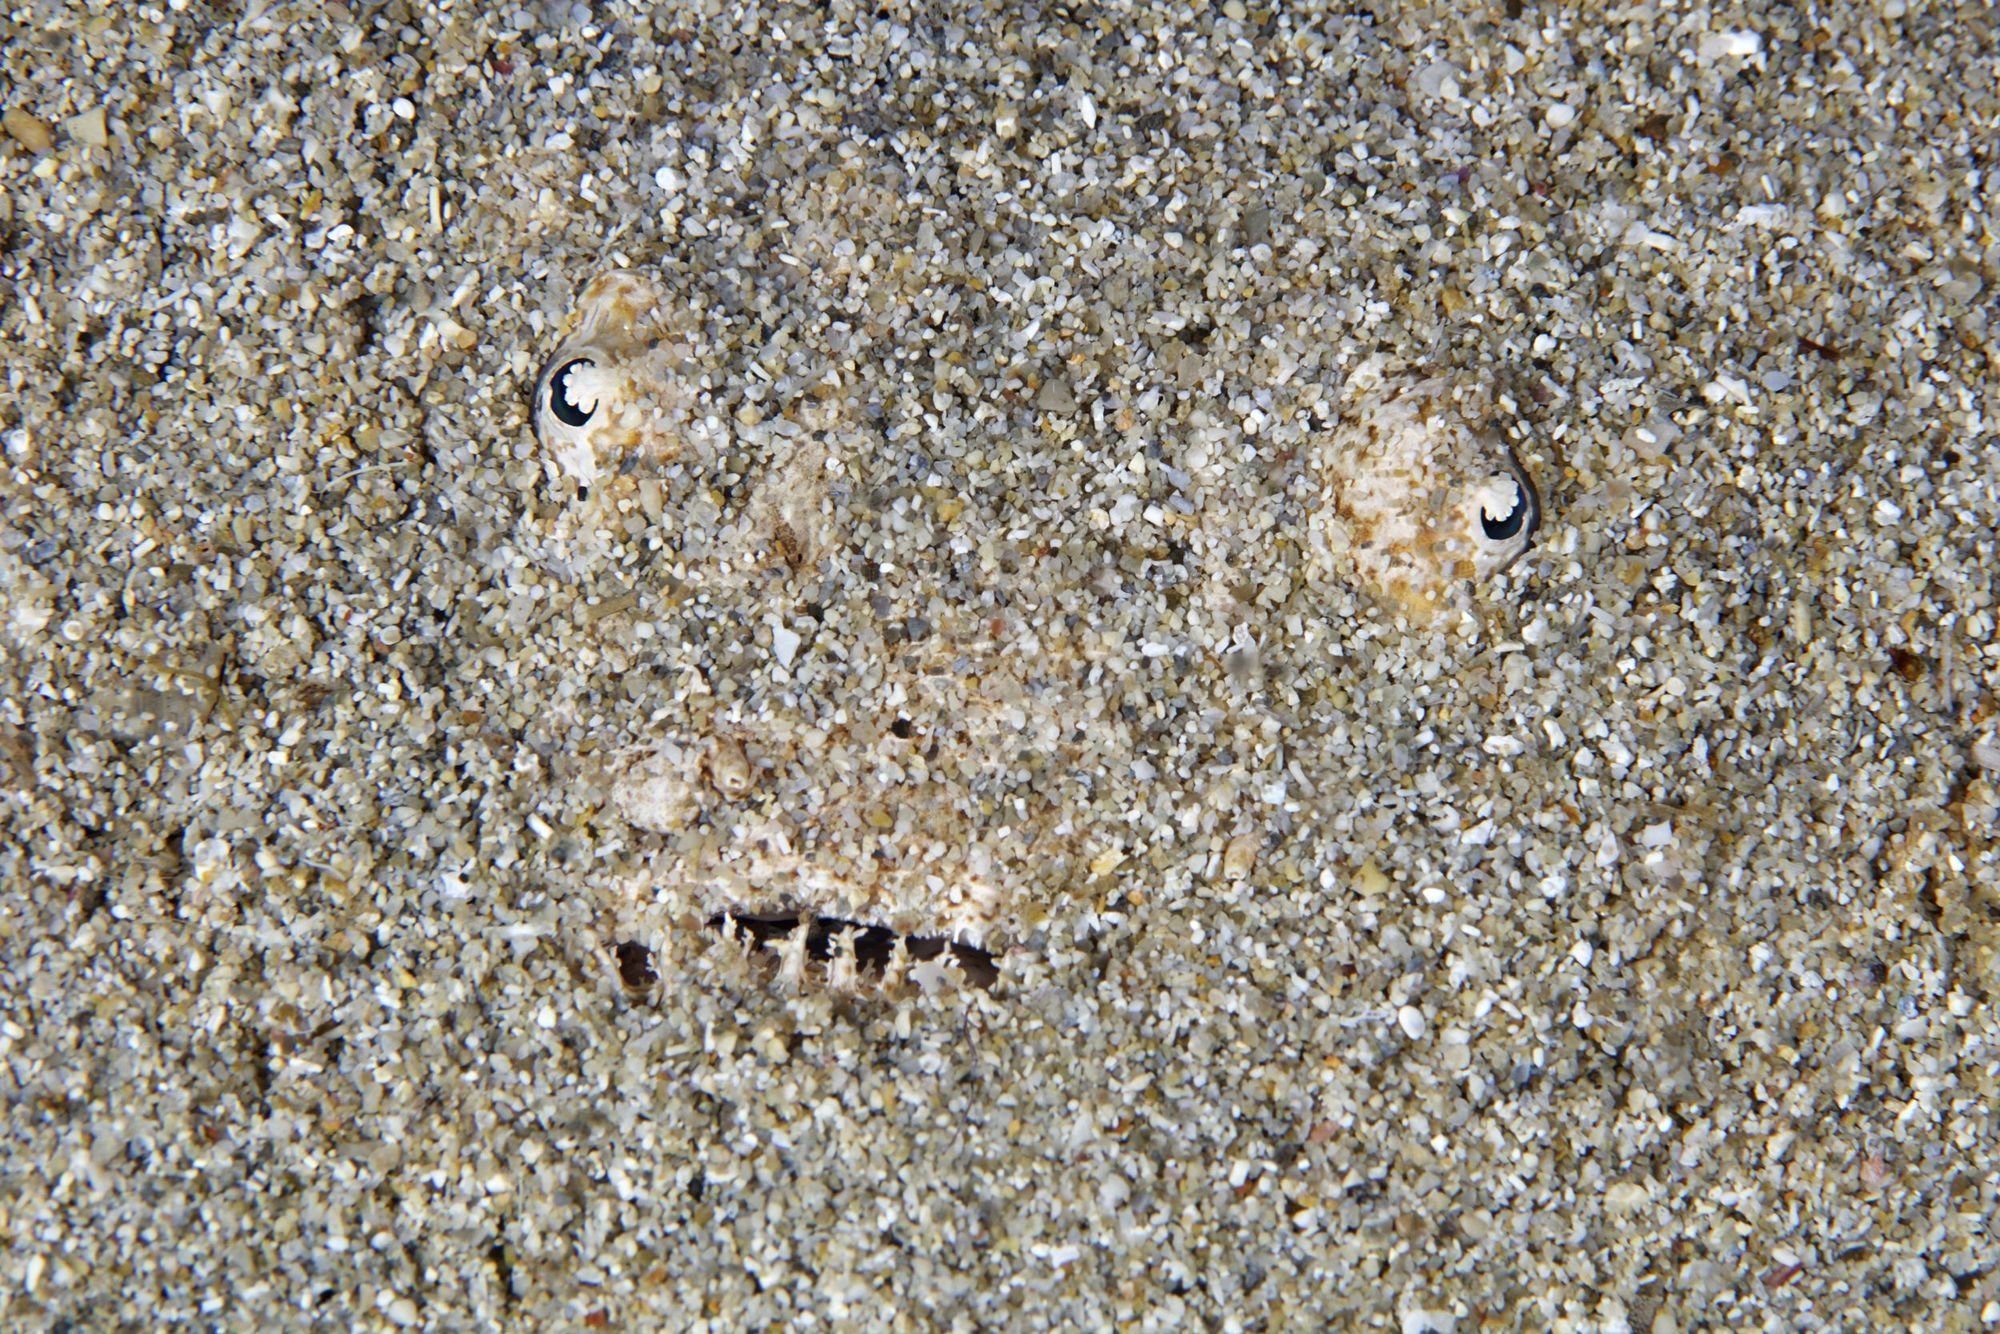 Detalle de un pez araña enterrado en Cala Carbó (Ibiza).